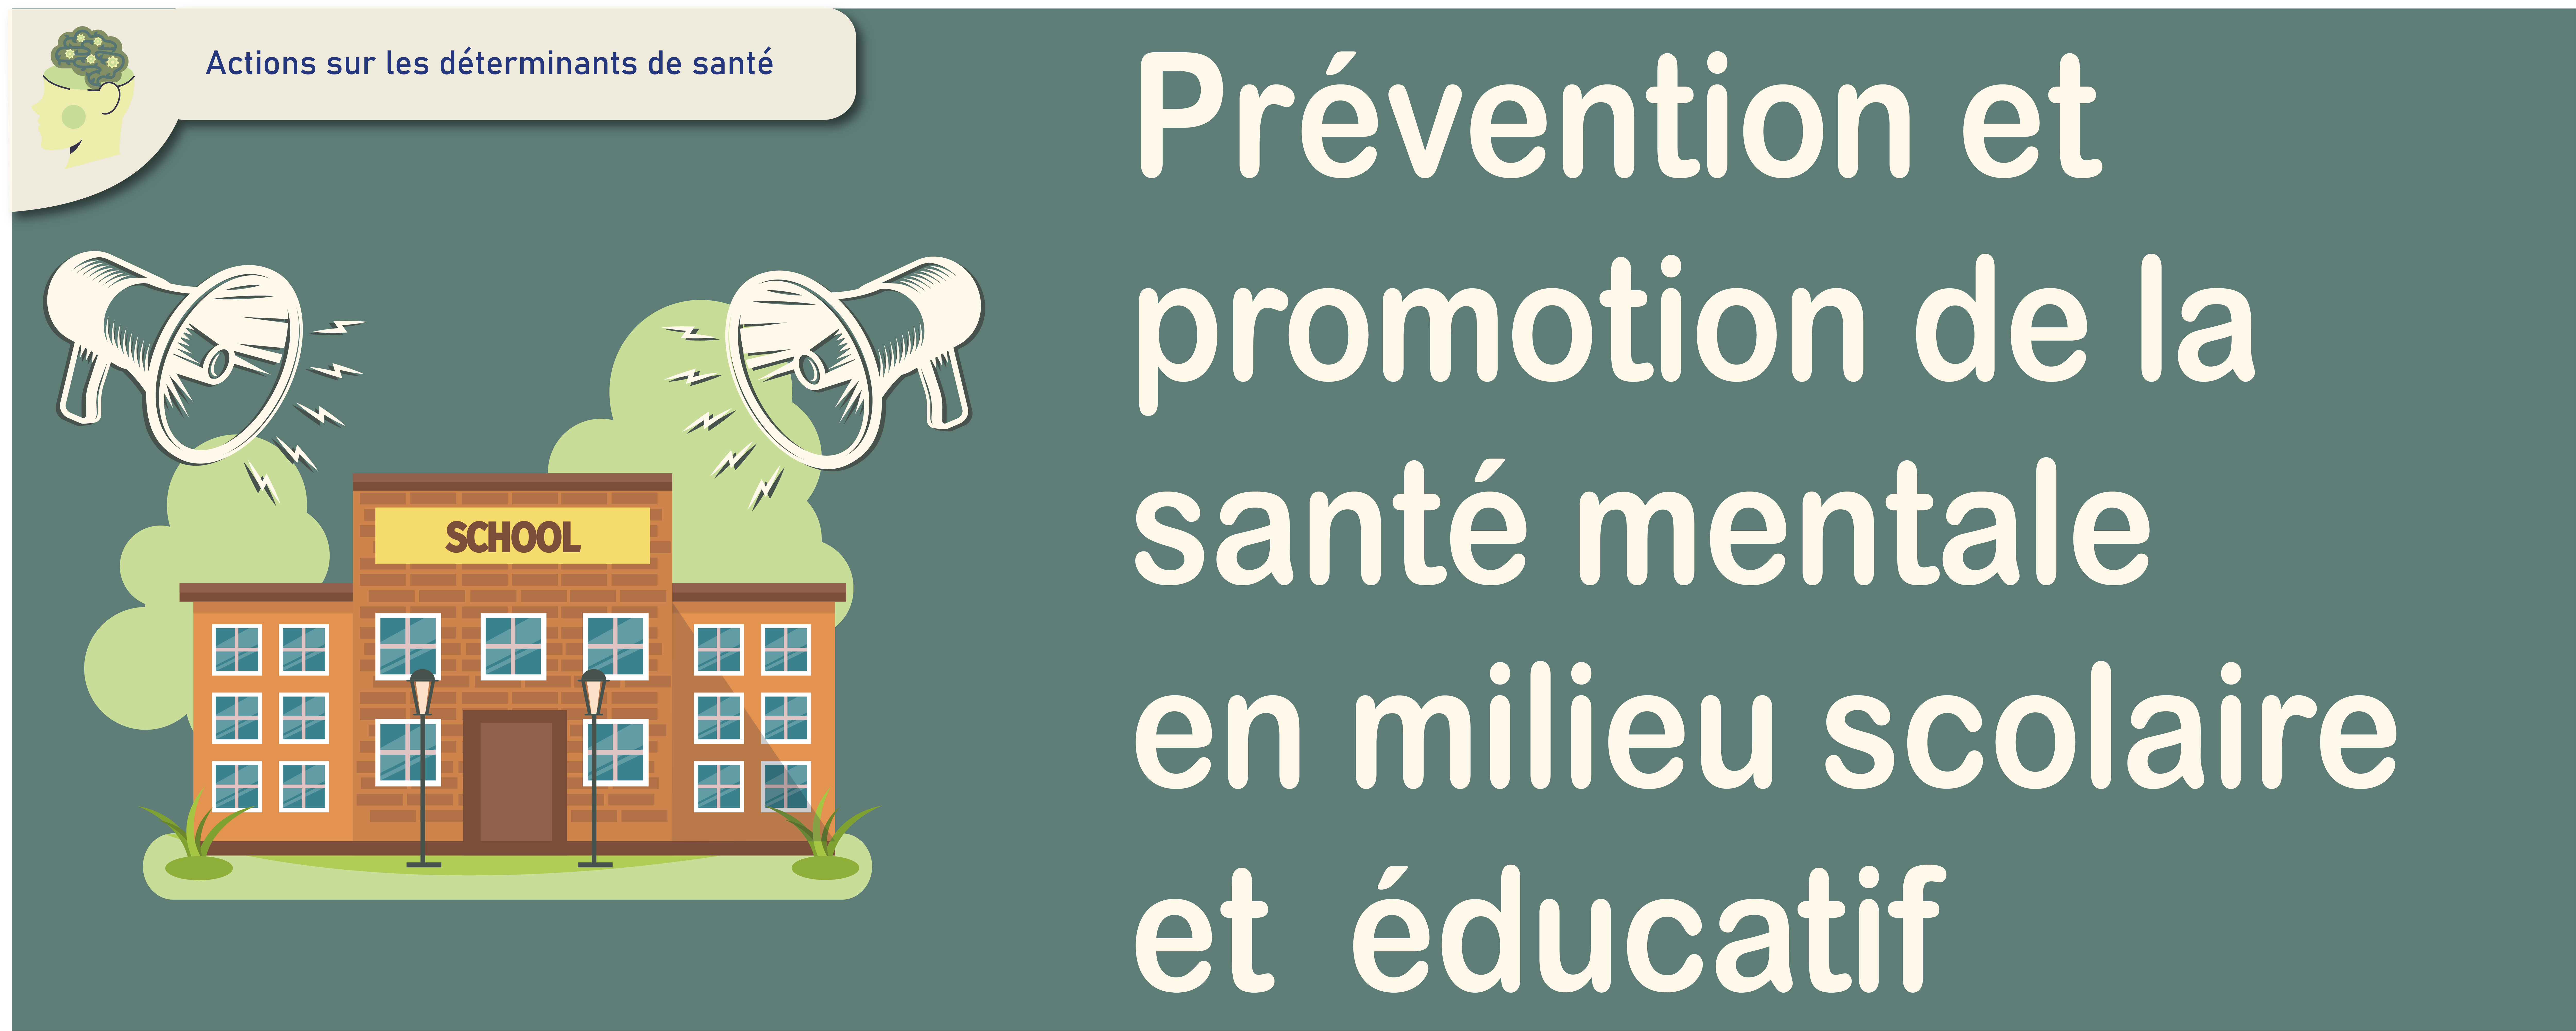 2276x1143_Prévention_promotion_SM_scolaire_Plan de travail 1.png